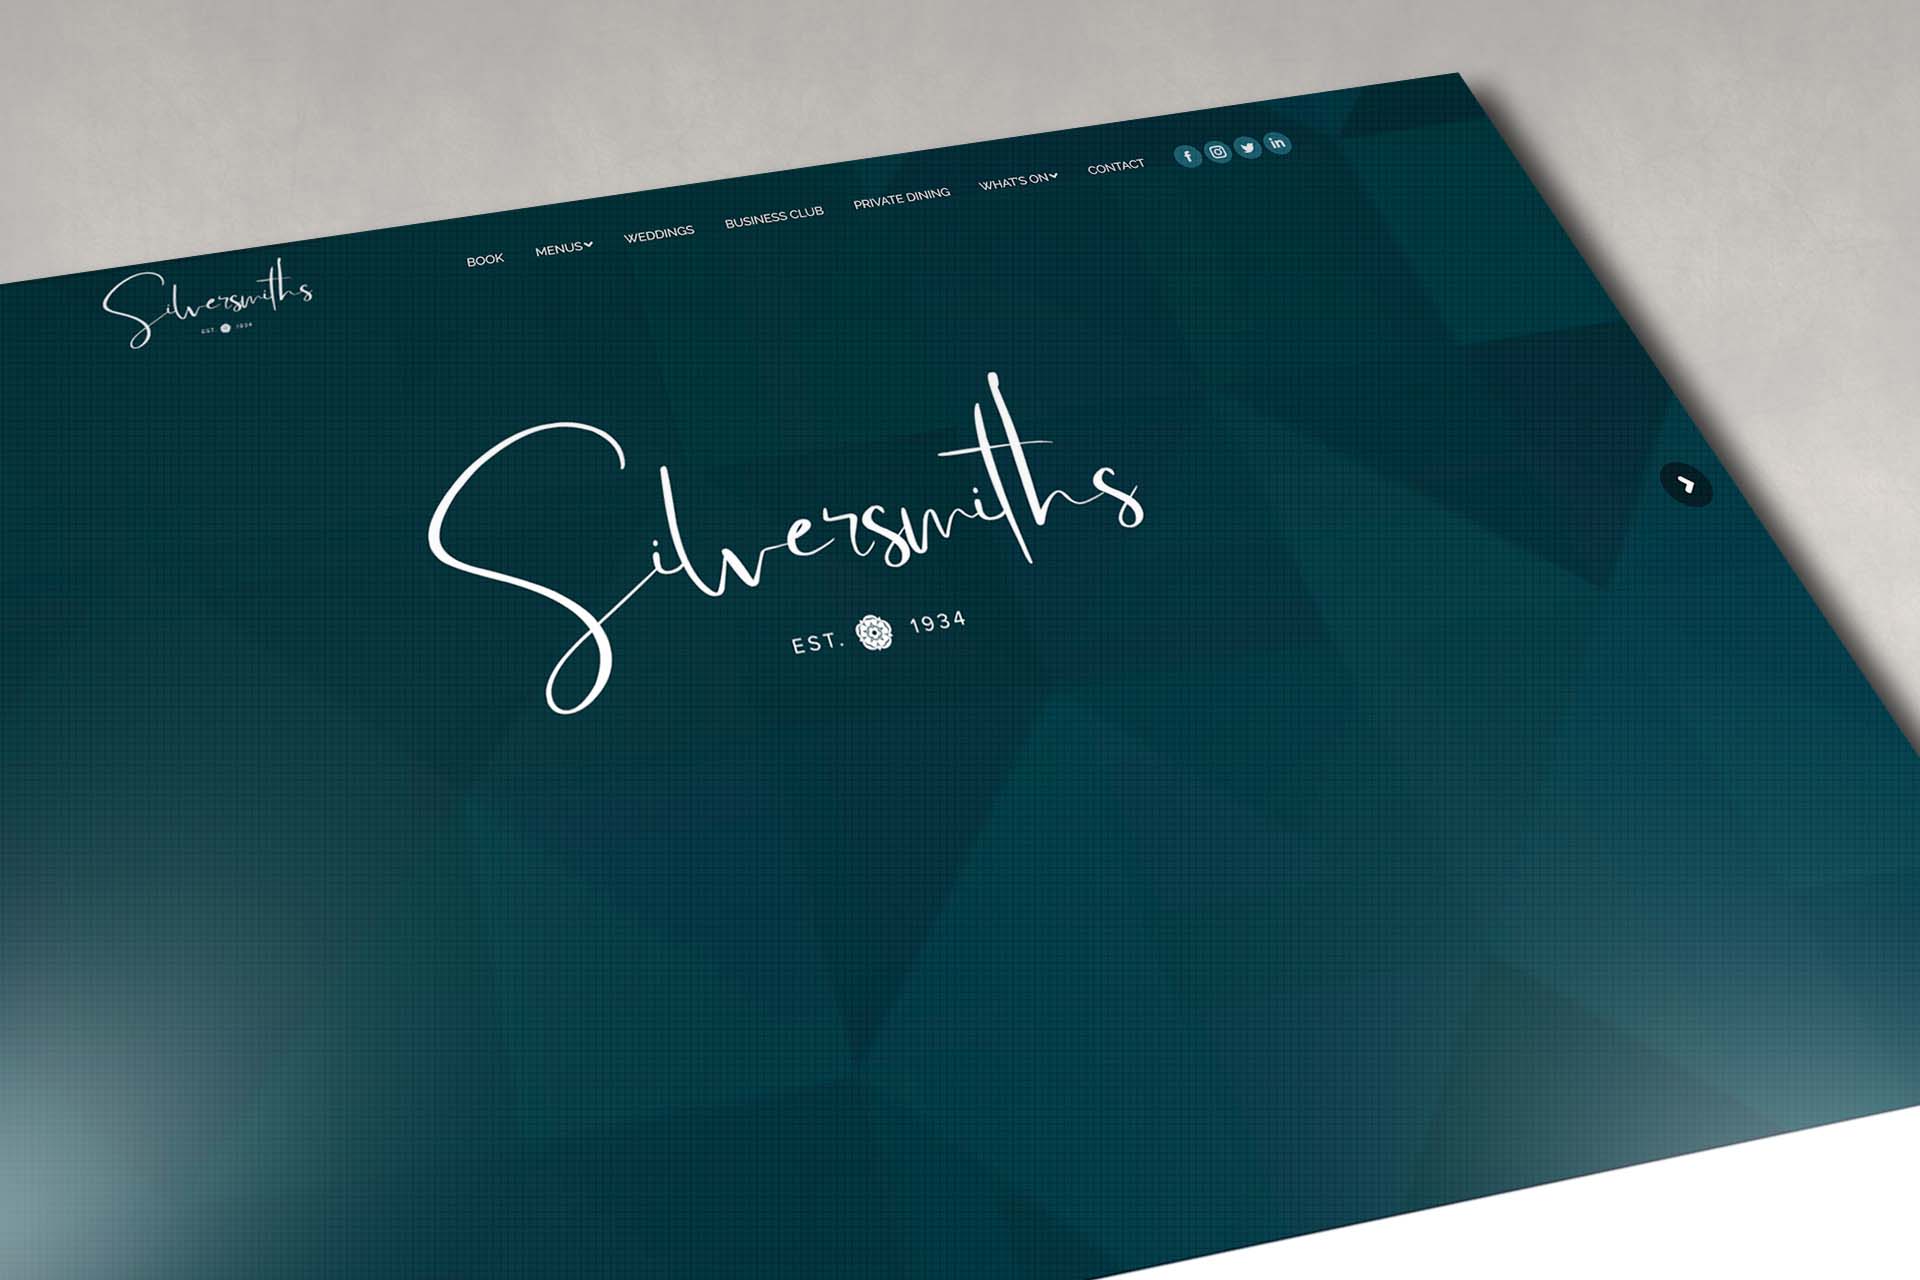 Silversmiths Website Design - Fenti Marketing